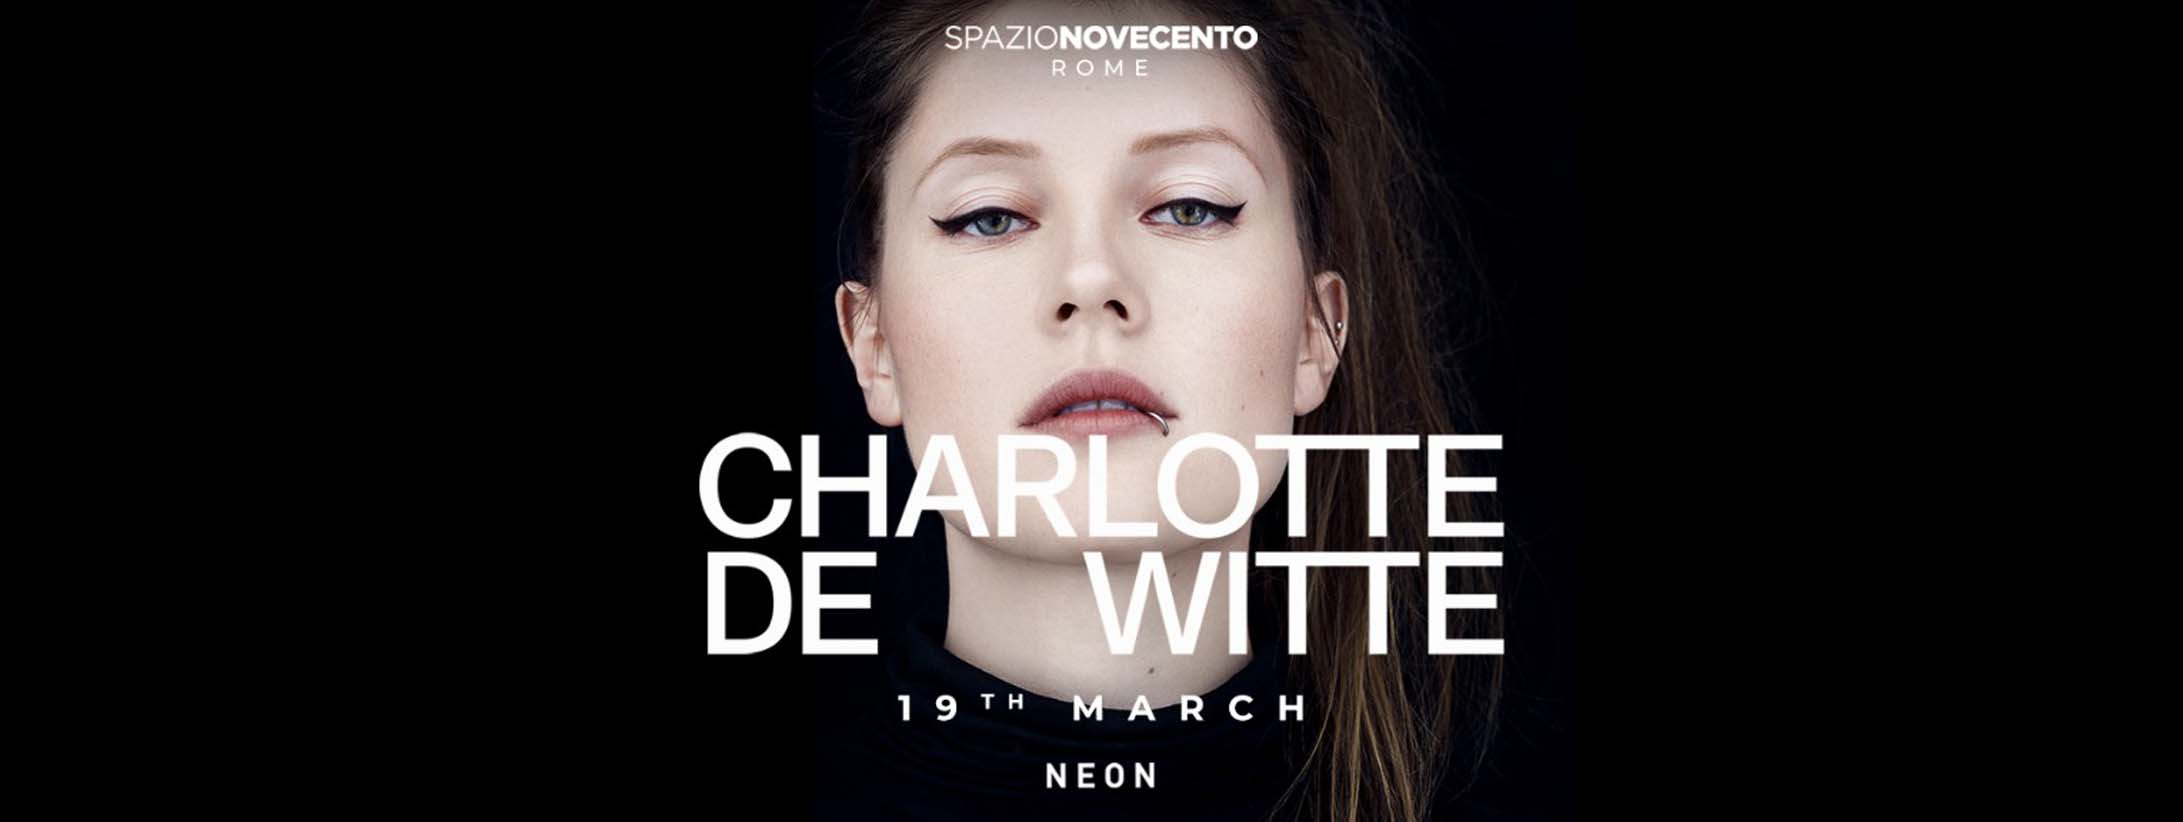 Charlotte-de-witte-spazio-novecento-19-marzo-2022